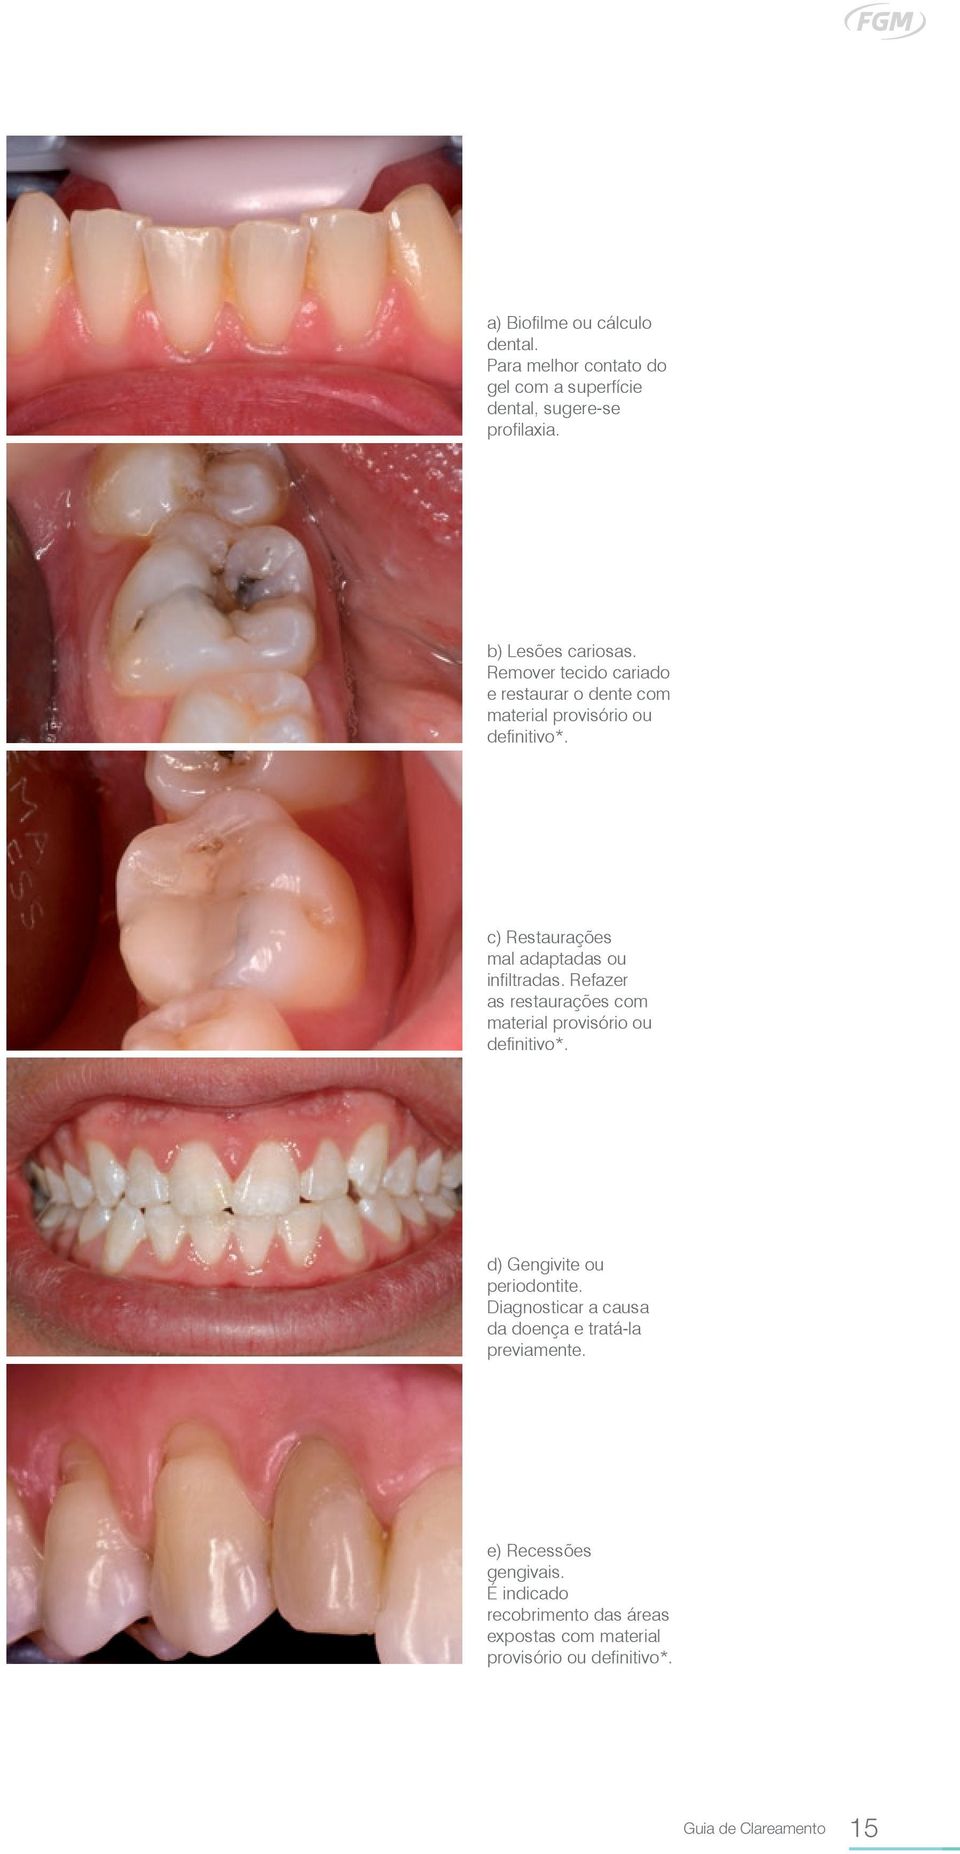 Refazer as restaurações com material provisório ou definitivo*. d) Gengivite ou periodontite.